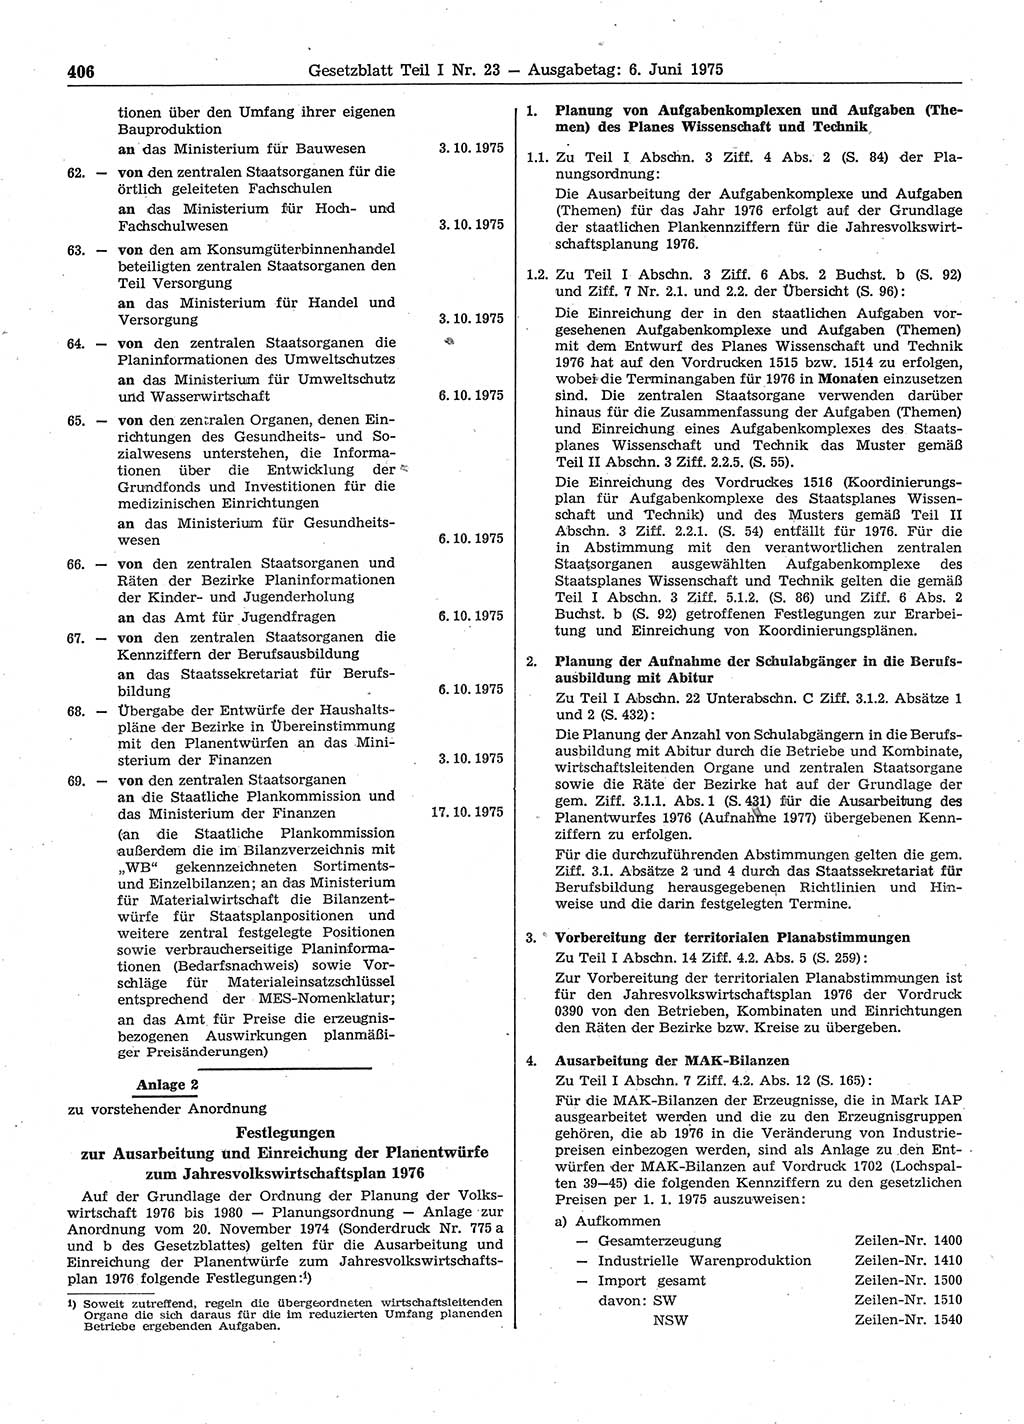 Gesetzblatt (GBl.) der Deutschen Demokratischen Republik (DDR) Teil Ⅰ 1975, Seite 406 (GBl. DDR Ⅰ 1975, S. 406)